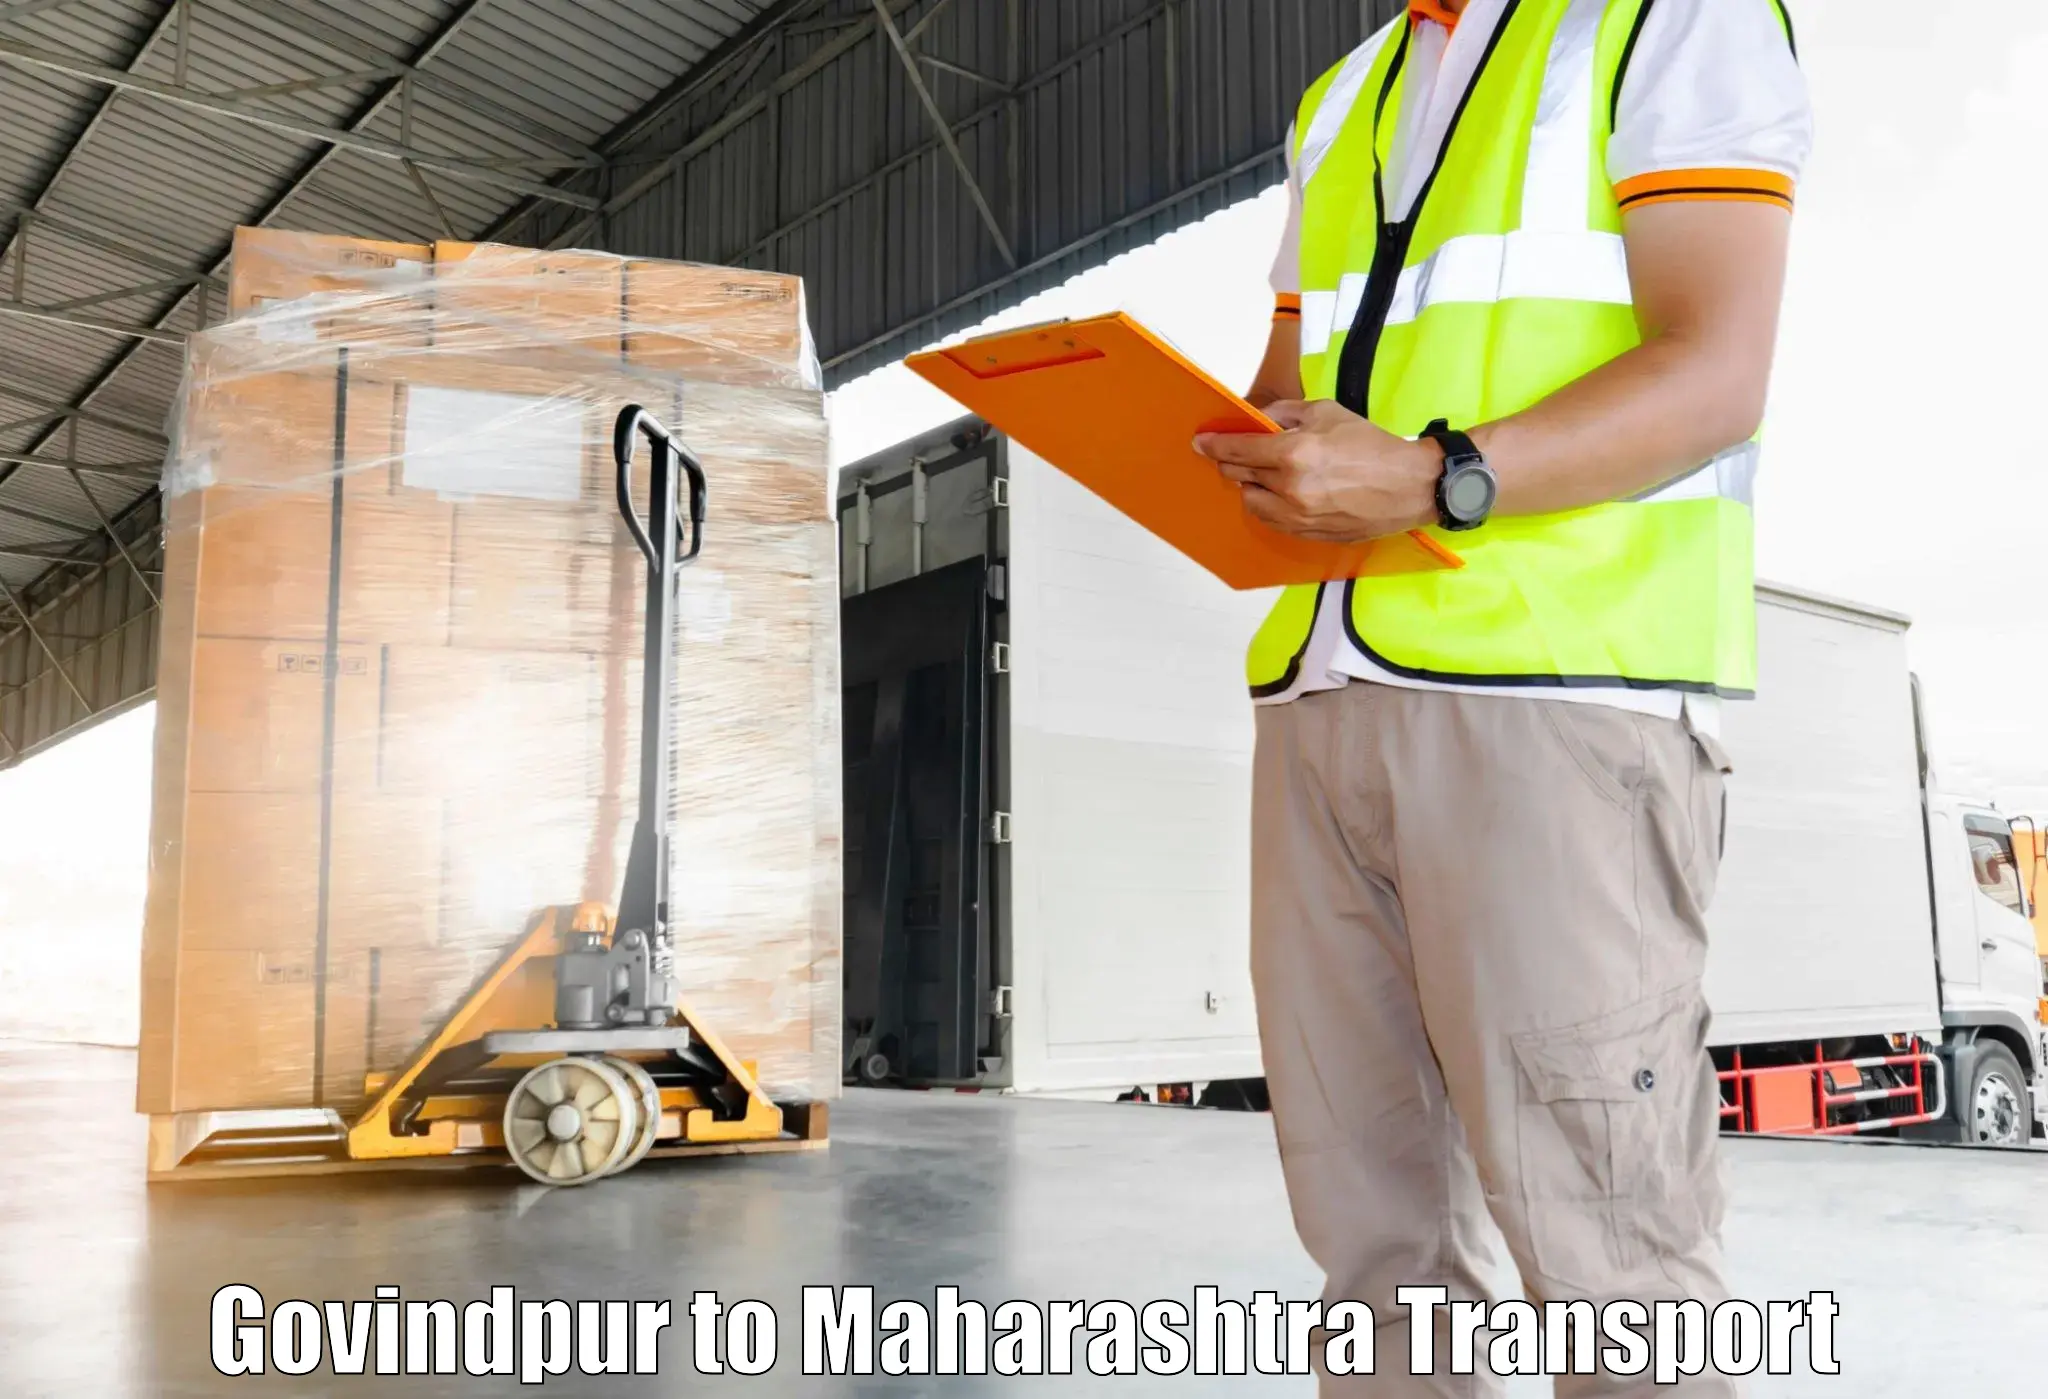 Commercial transport service Govindpur to Shindkheda